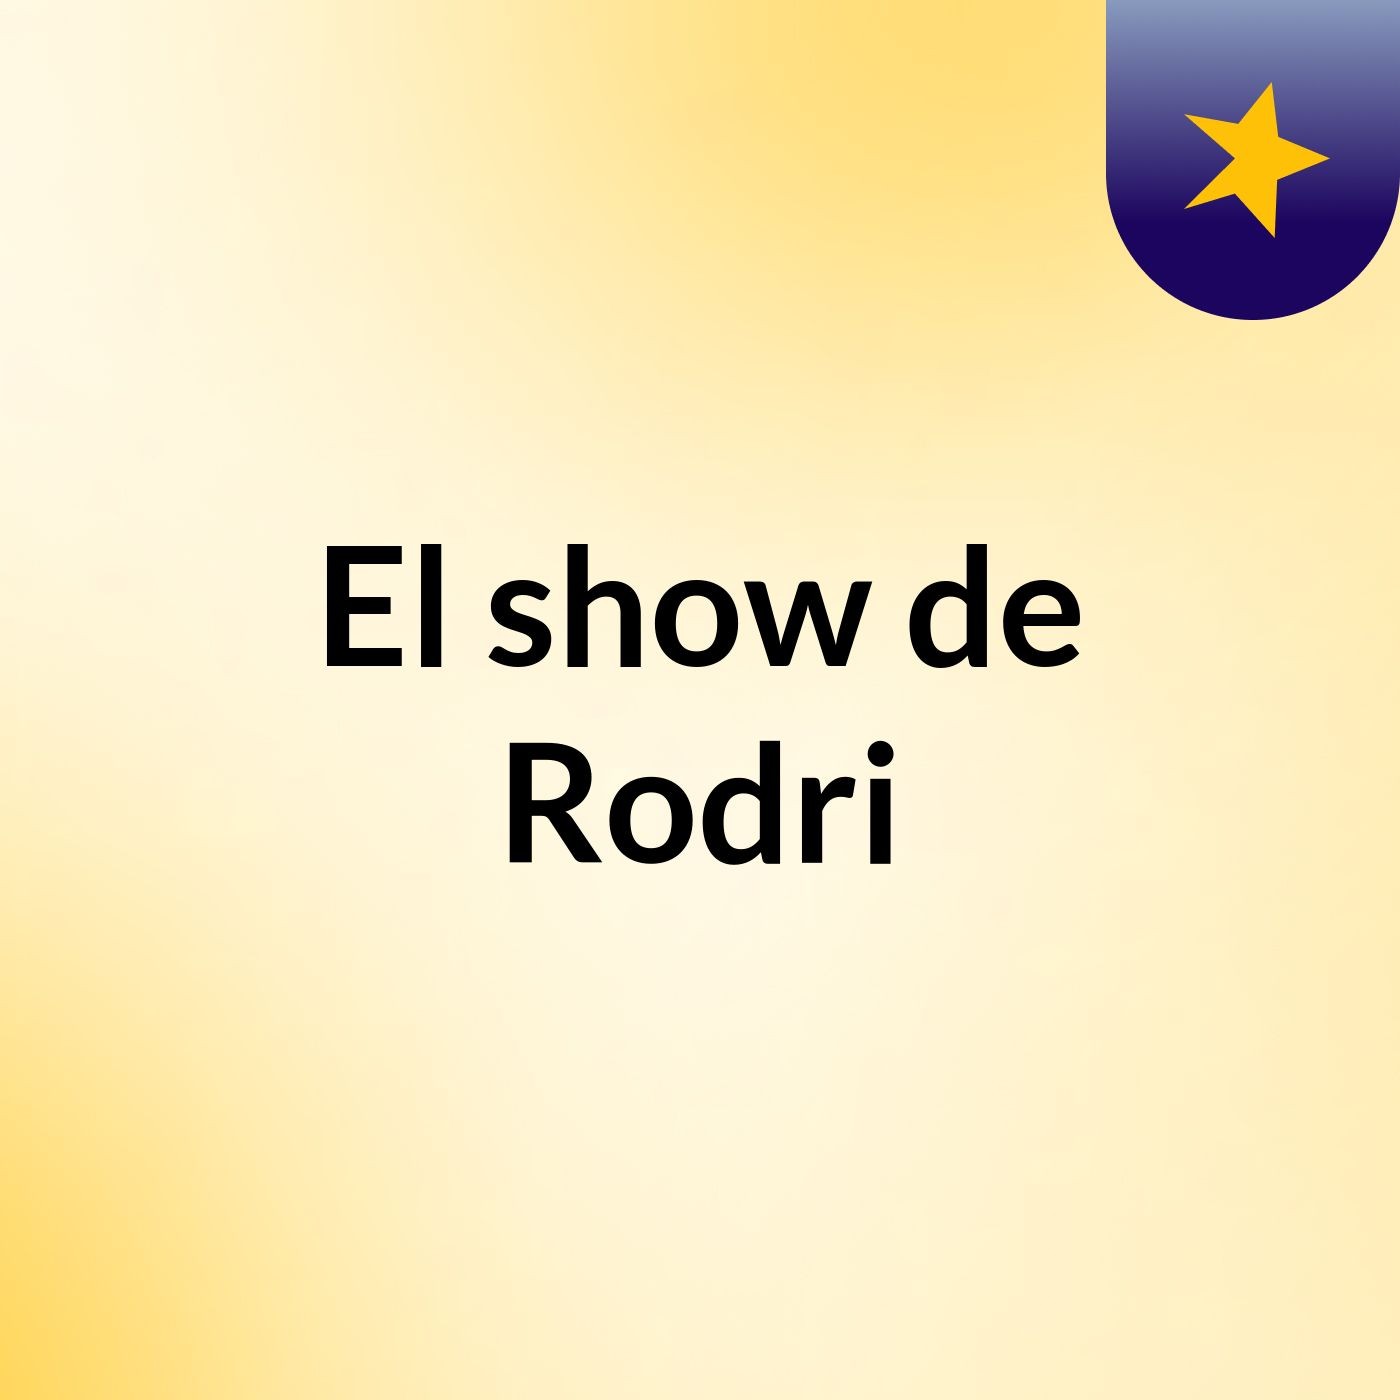 Episodio 4 - El show de Rodri